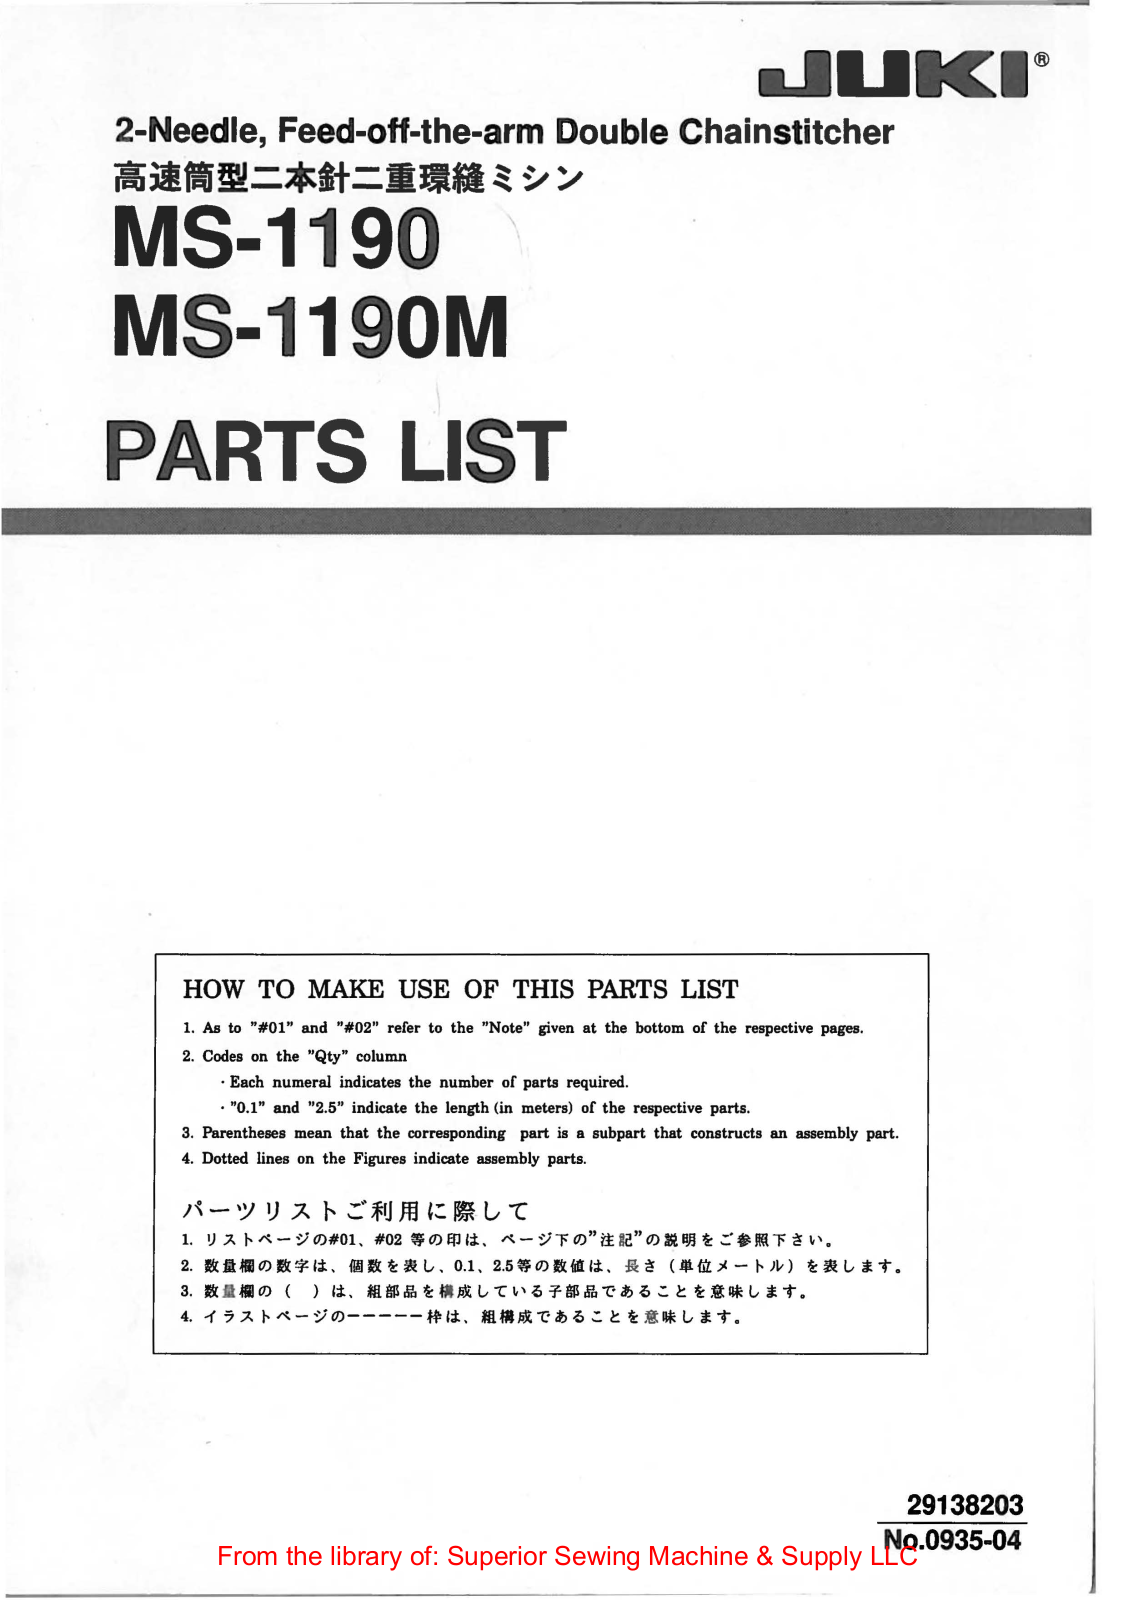 Juki MS-1190, MS-1190M Manual